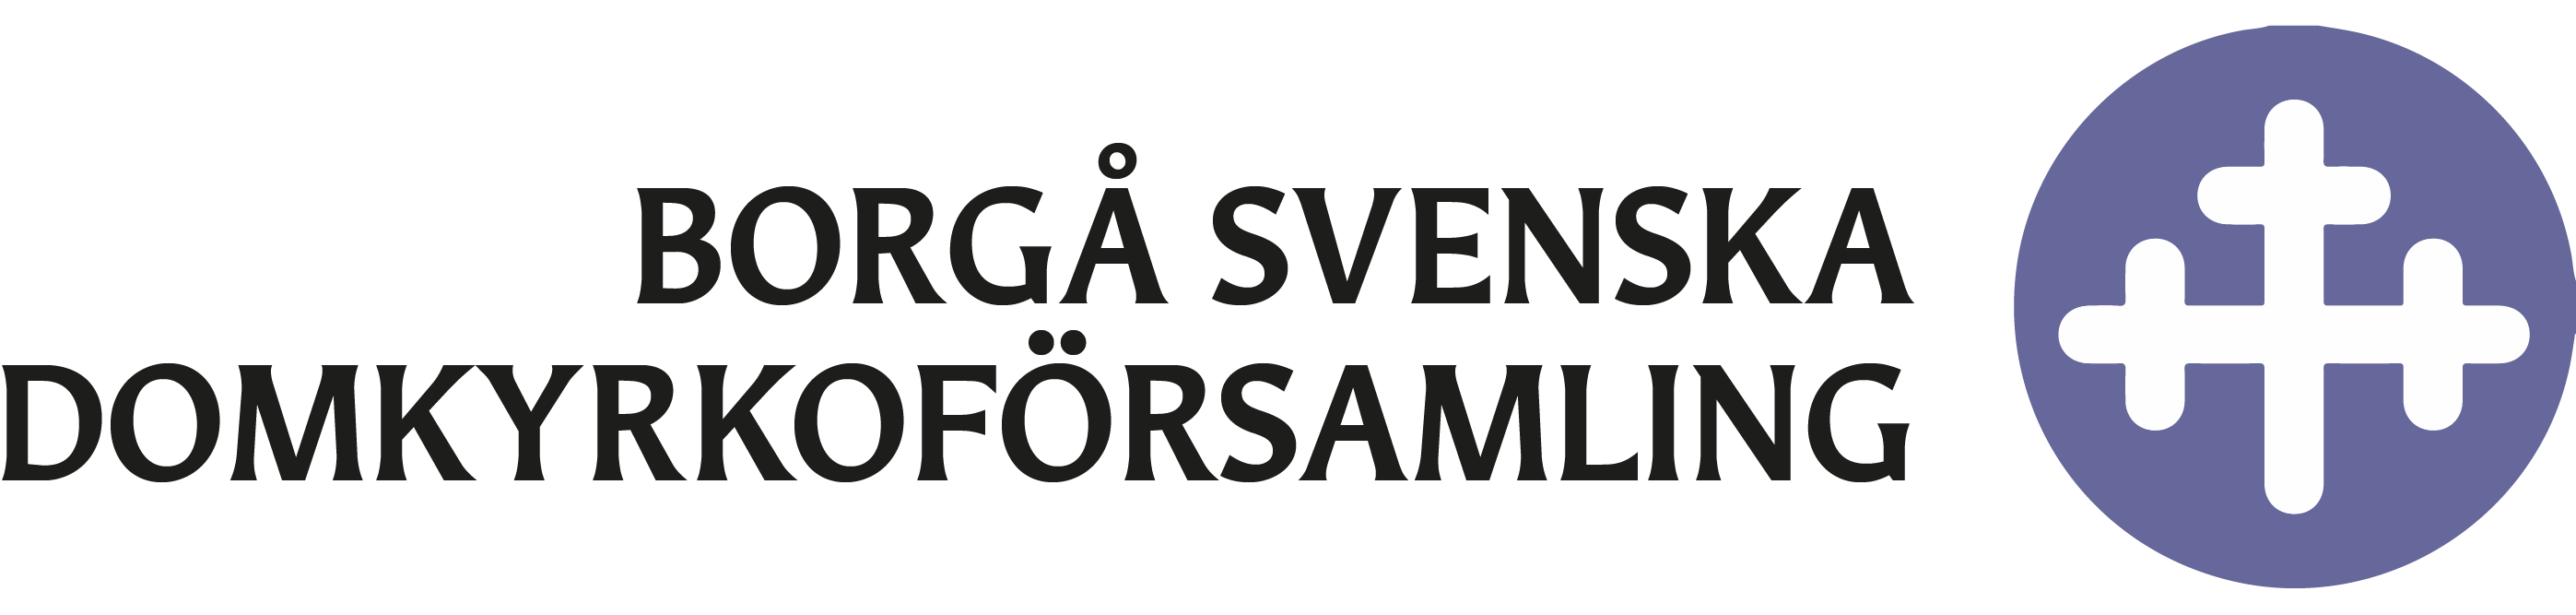 Borgå svenska domkyrkoförsamling